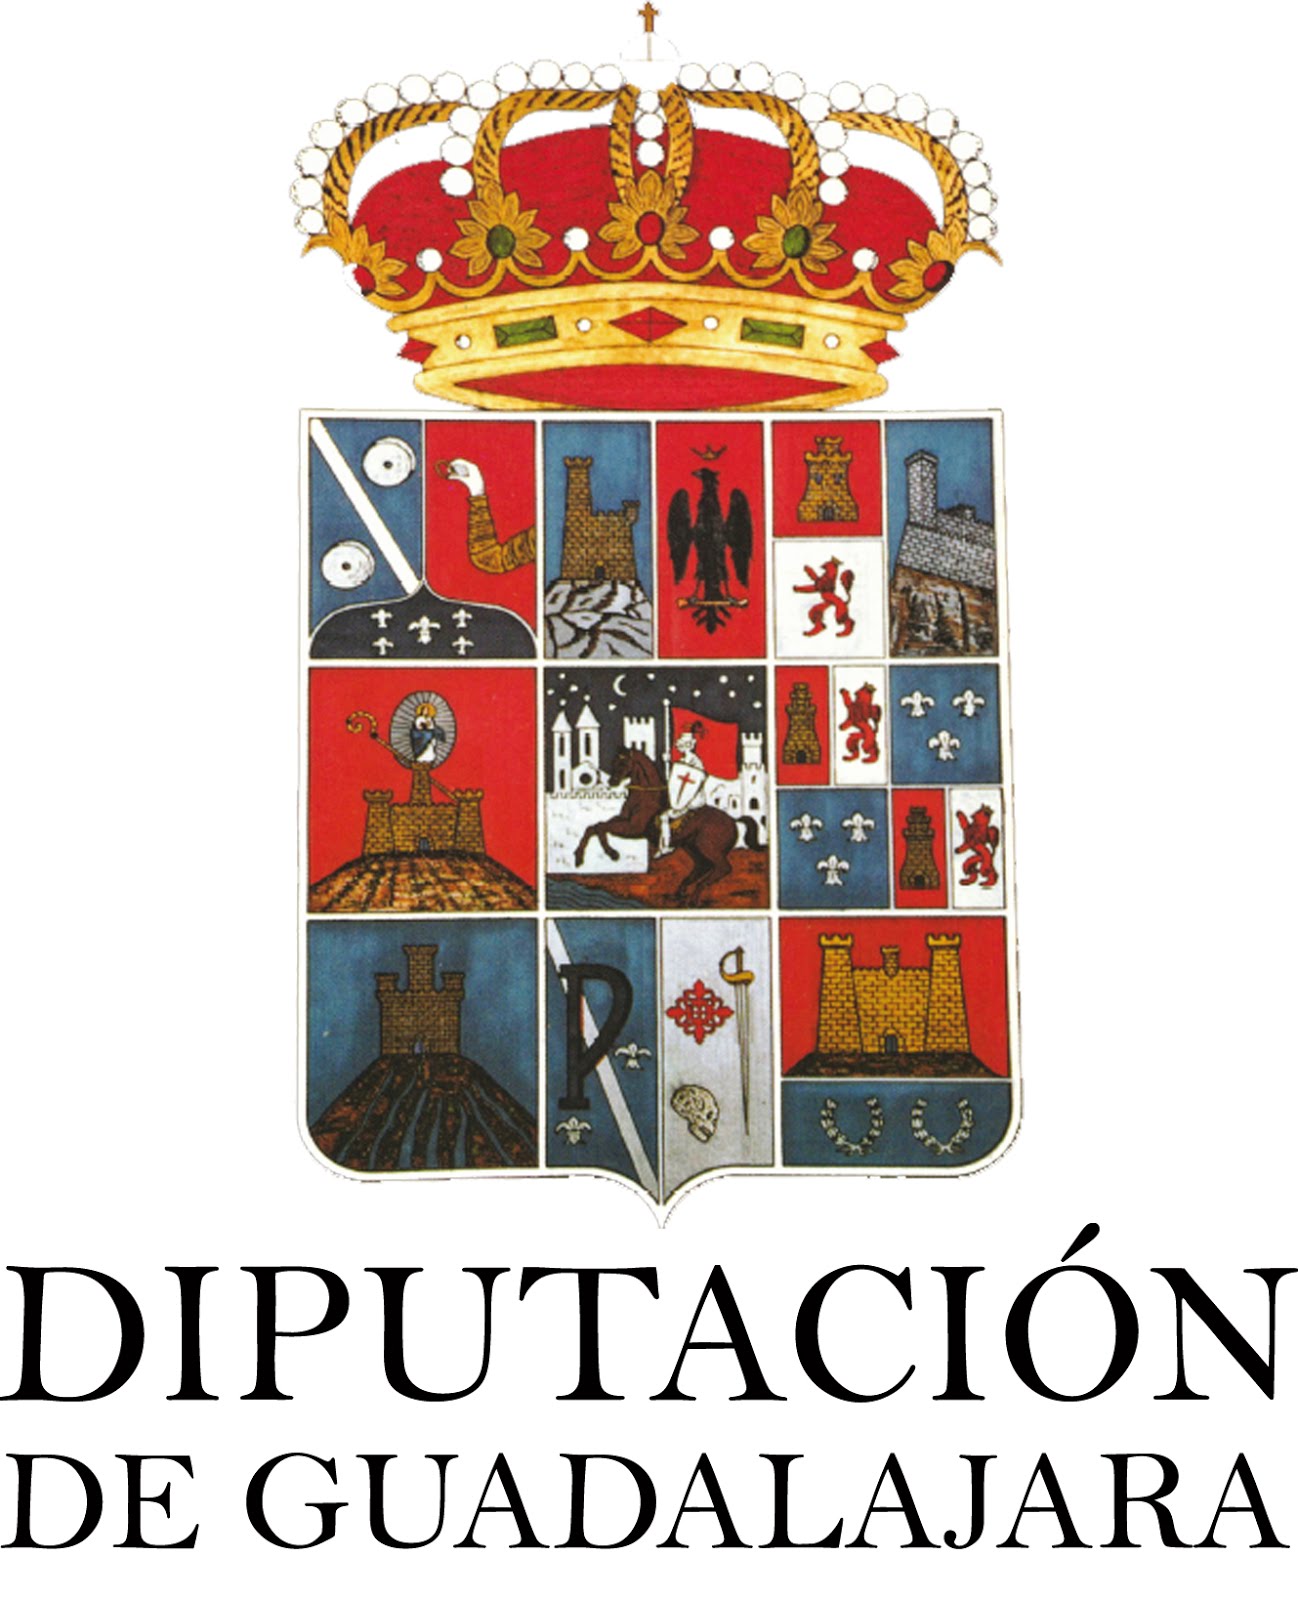 DIPUTACION DE GUADALAJARA